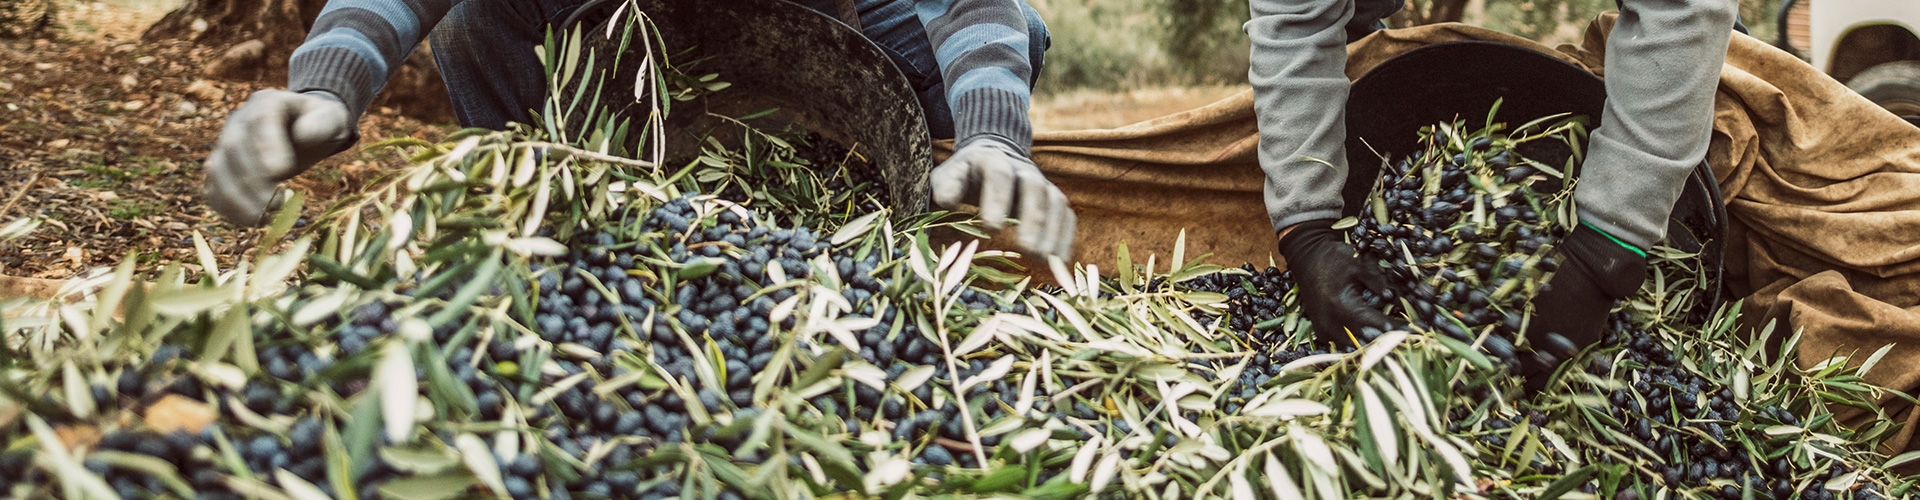 Seguro Agrario -Seguro Olivar de Globalcaja -Trabajadores recogiendo la cosecha de olivos en un recipiente